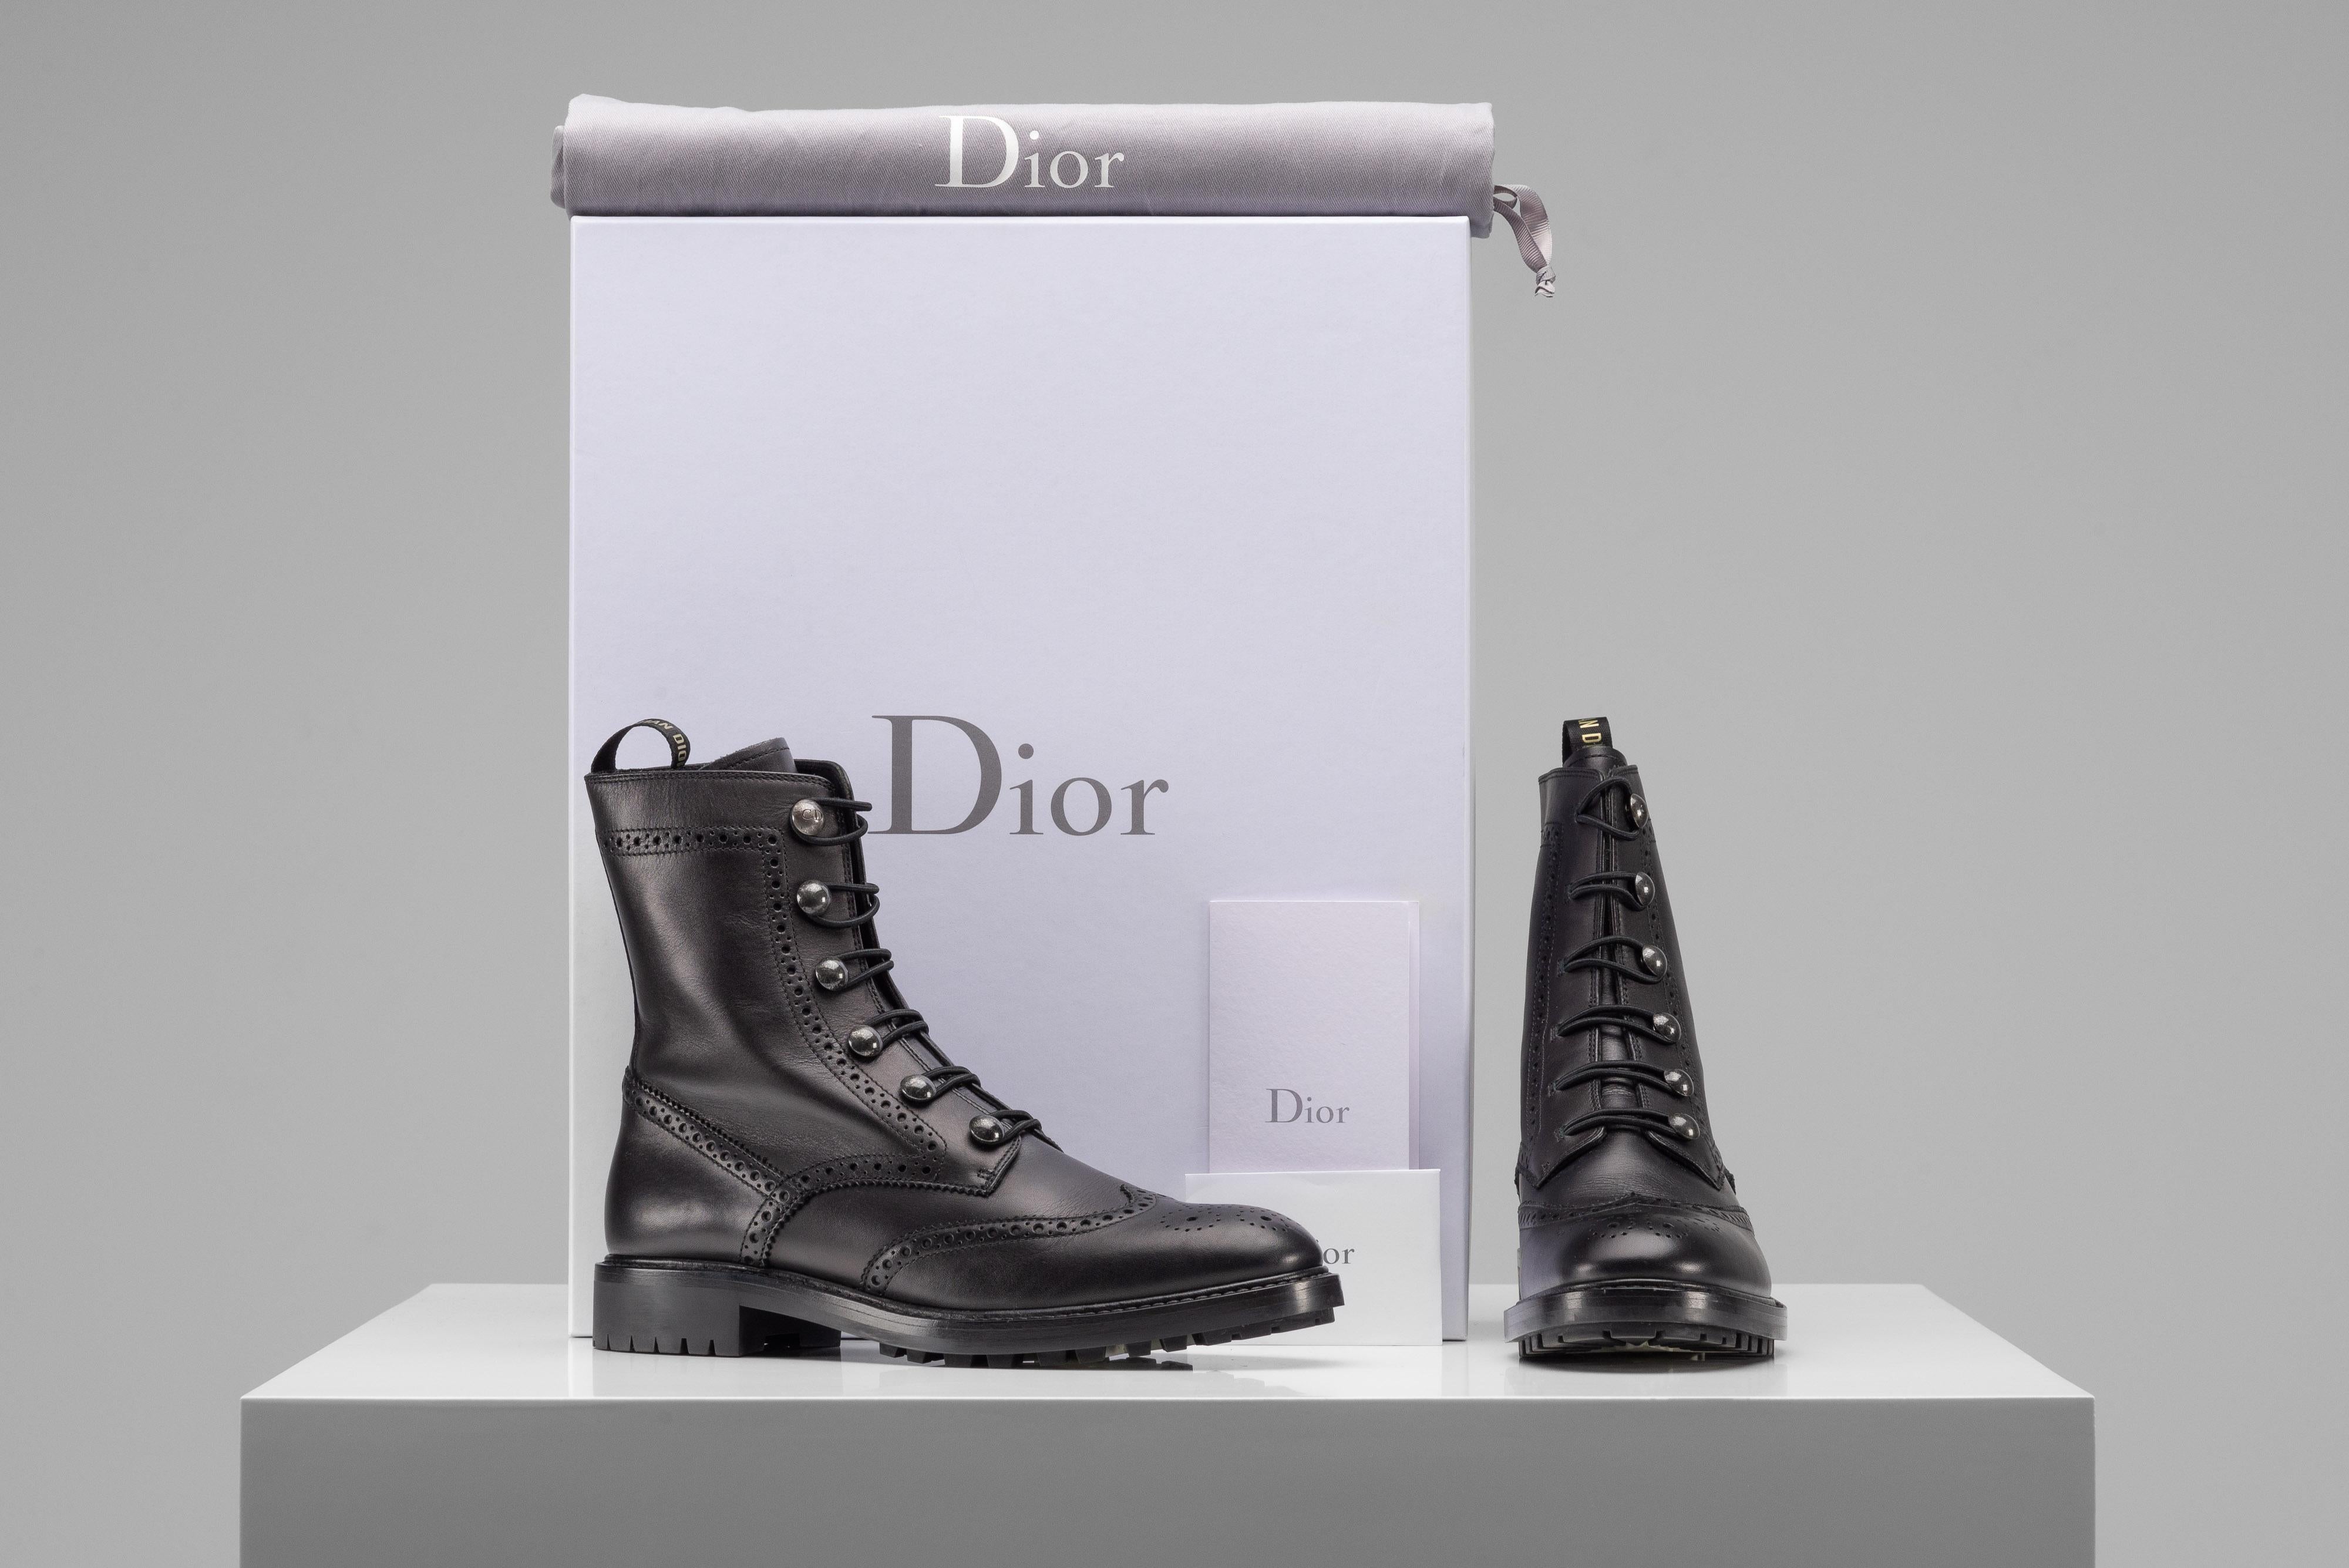 La collection SAVINETI propose ces bottes de combat en cuir Dior :
-    Marque : Christian Dior
-    Modèle : Bottes de combat en cuir
-    Couleur : Noir
-    Taille : 40
-    Condit : Très bon état
-    Extras : Boîte Dior

L'authenticité est